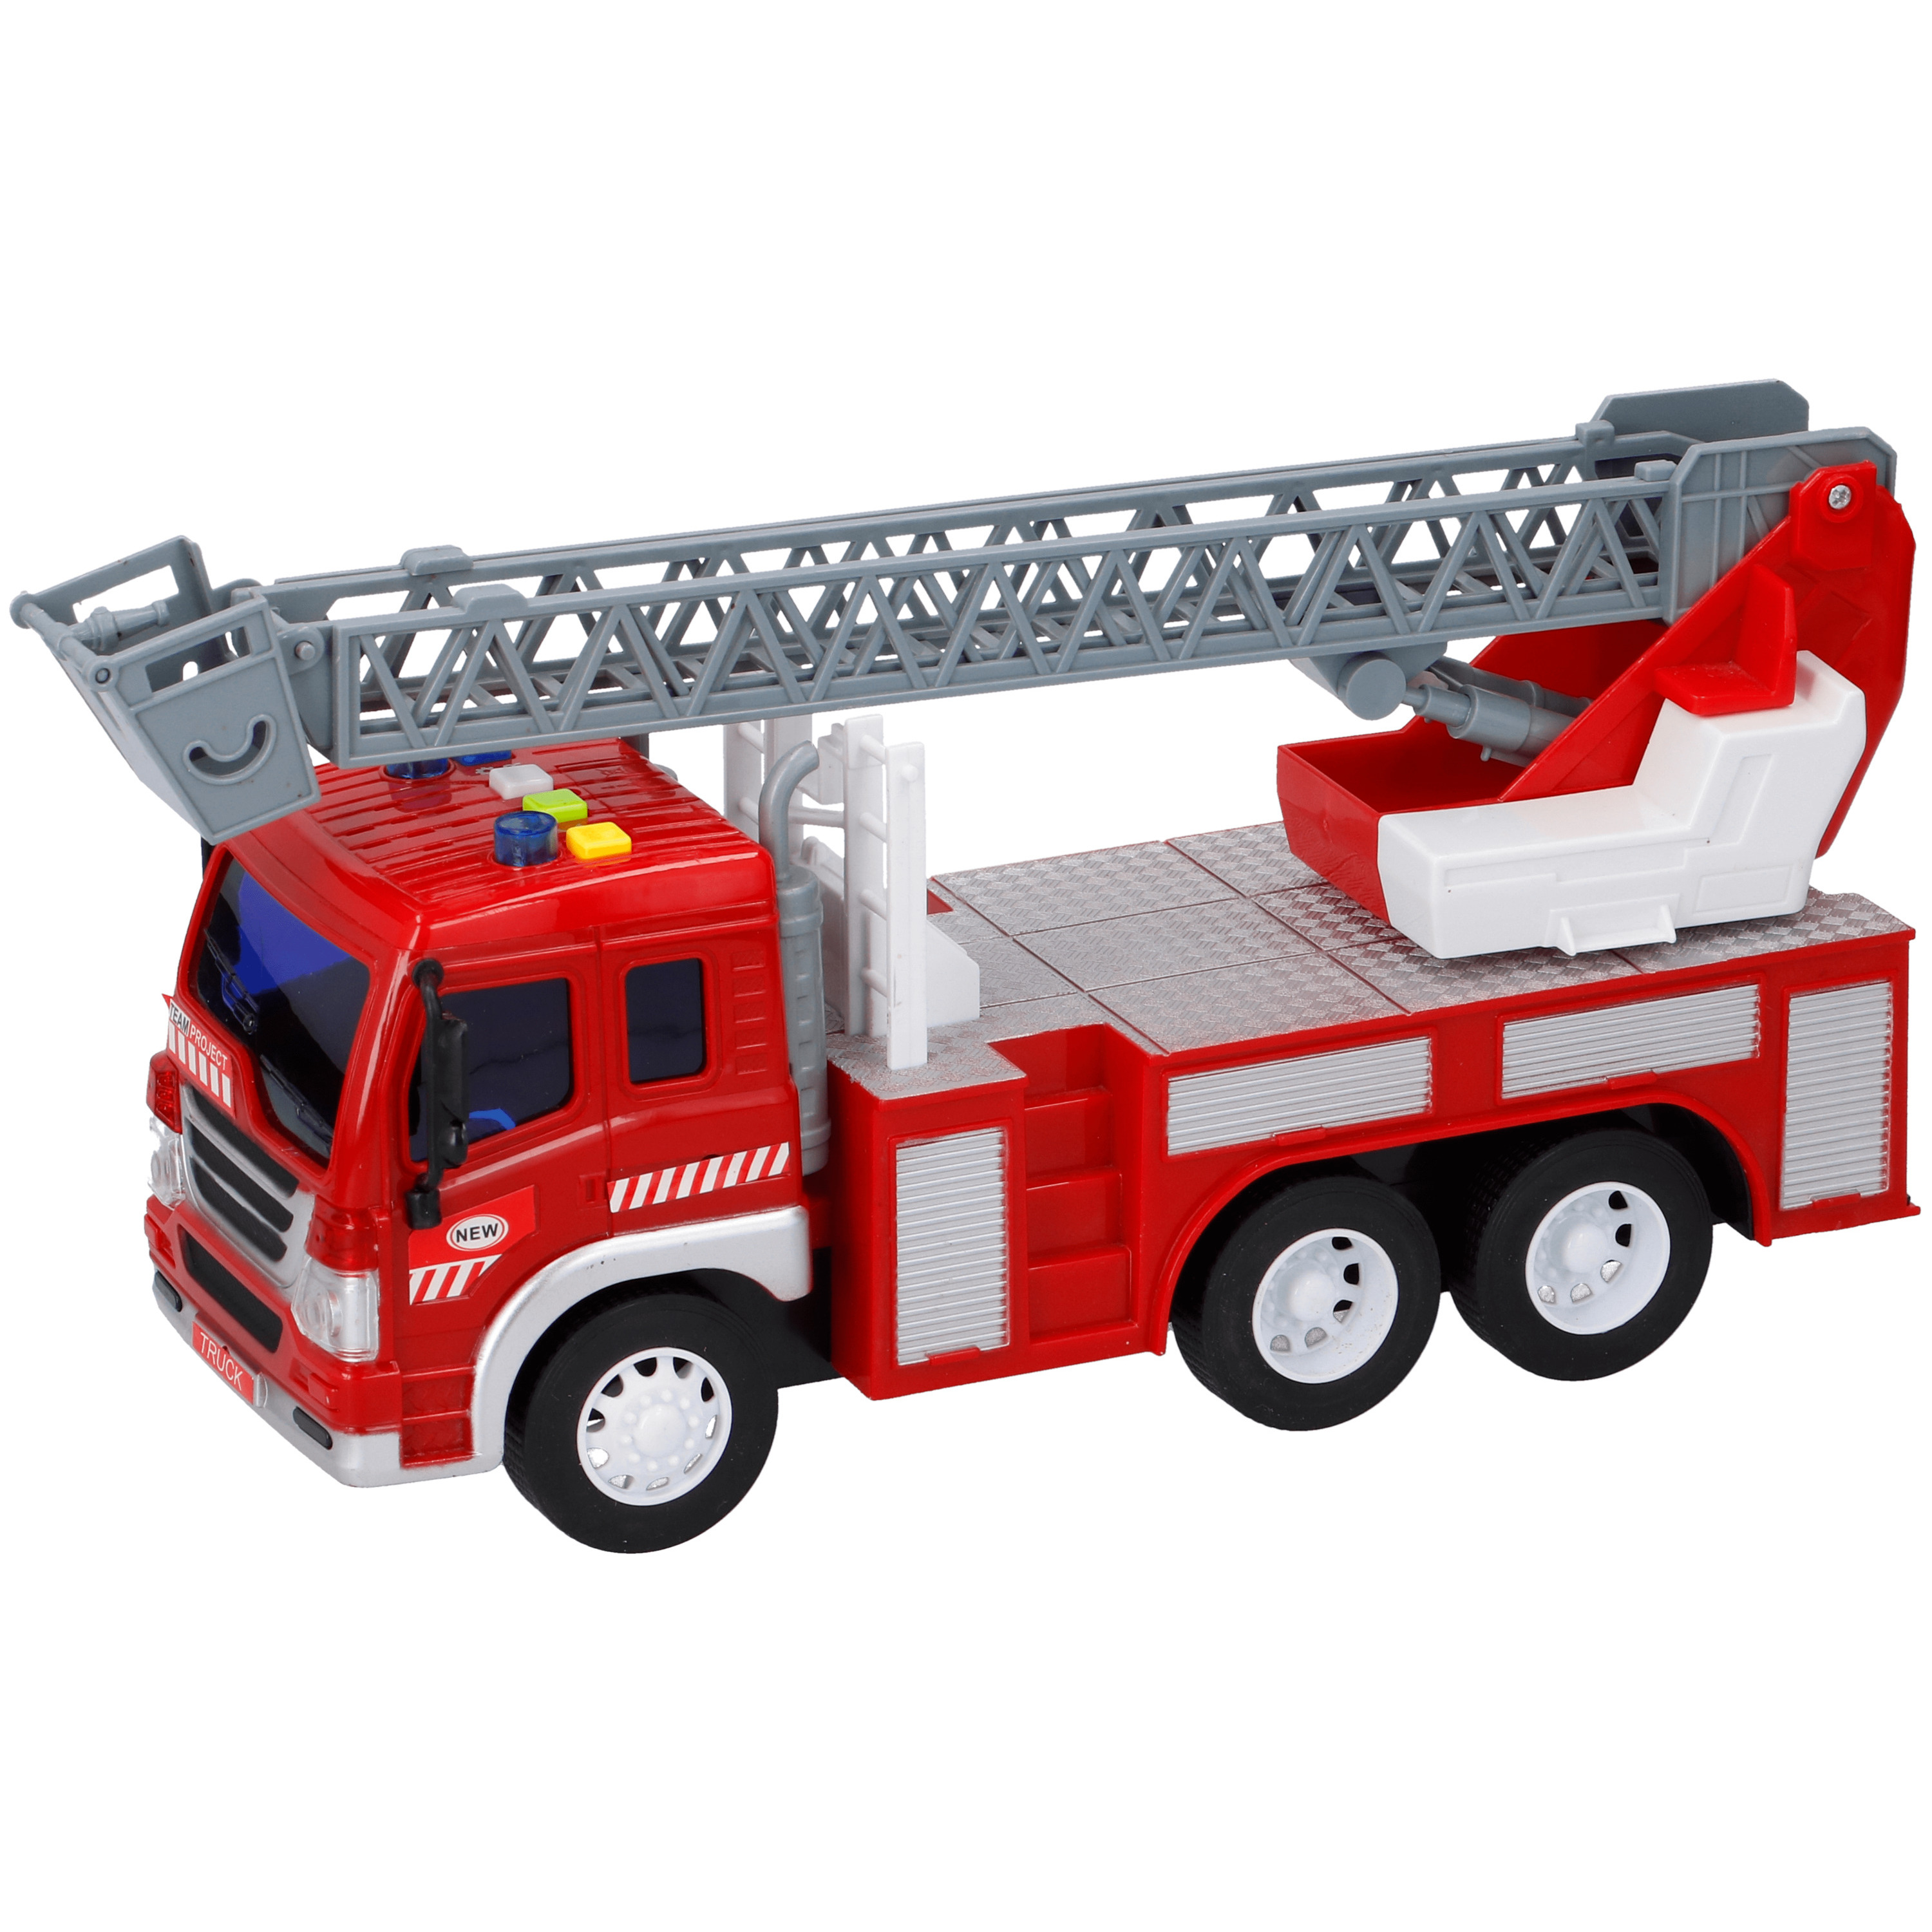 Speelgoed brandweerwagen met licht effecten en sirenegeluid 27 5 x 10 x 14 cm